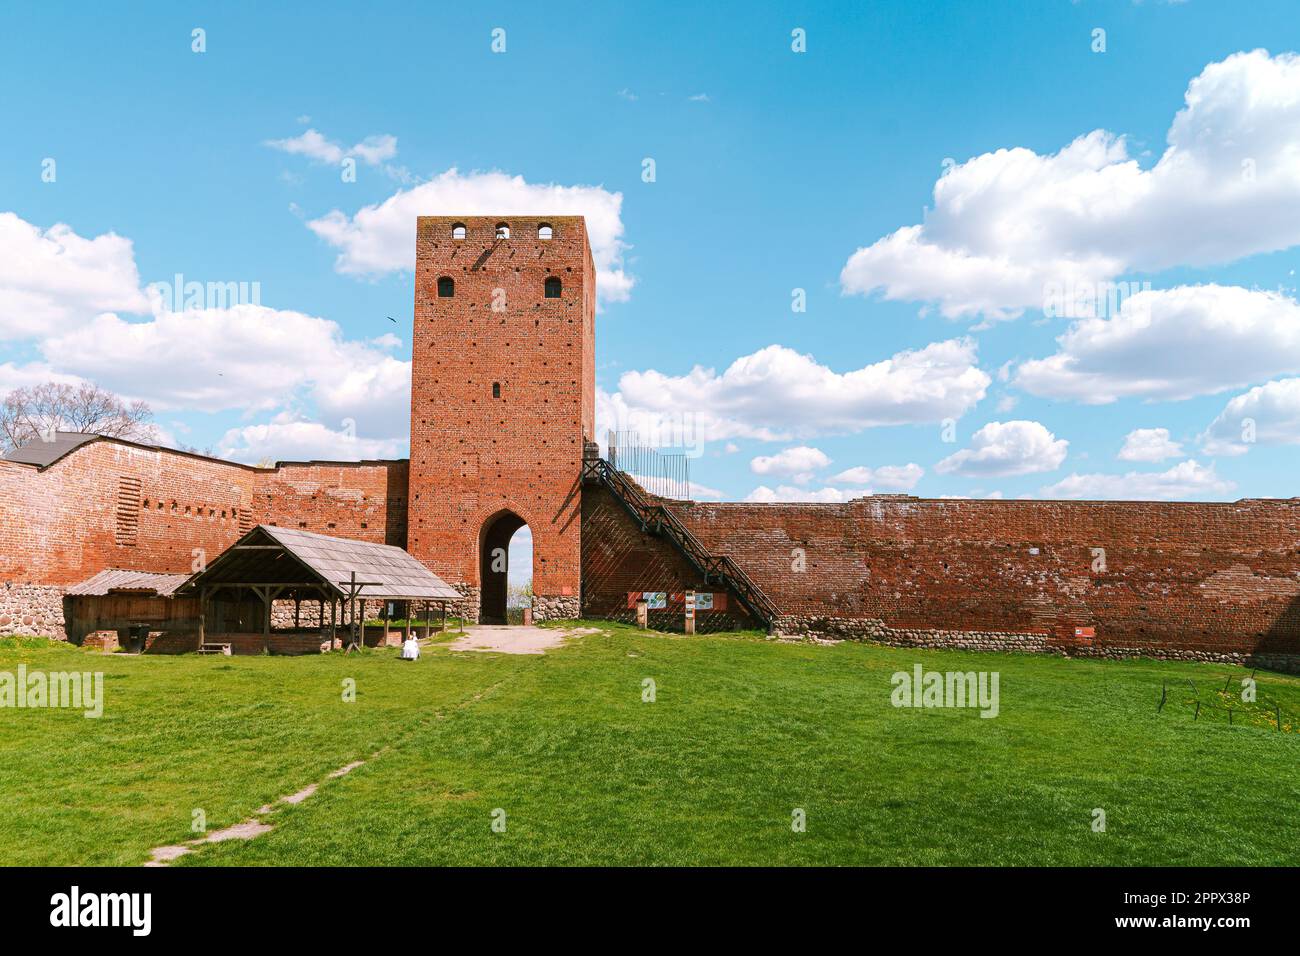 Schloss in Czersk, Polen. Blick auf den Torturm. Mittelalterliches rotes Backsteinschloss. Residenz der Herzöge von Mazovia Stockfoto